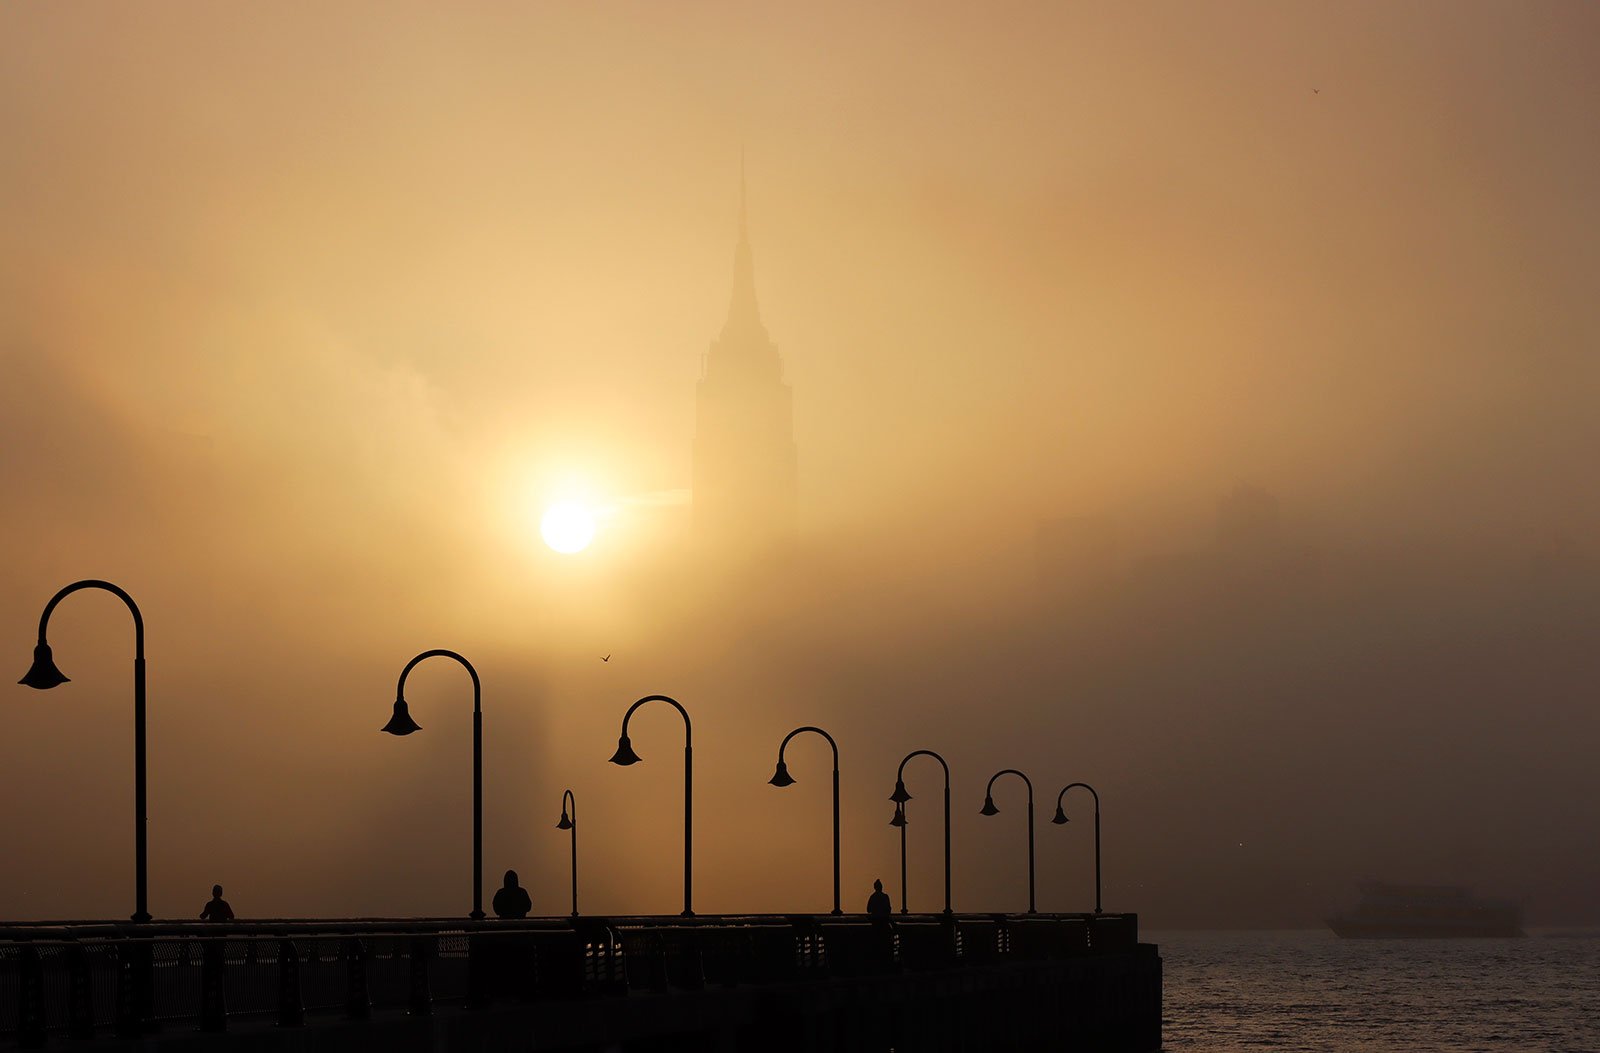 foggy NYC skyline and faded sun